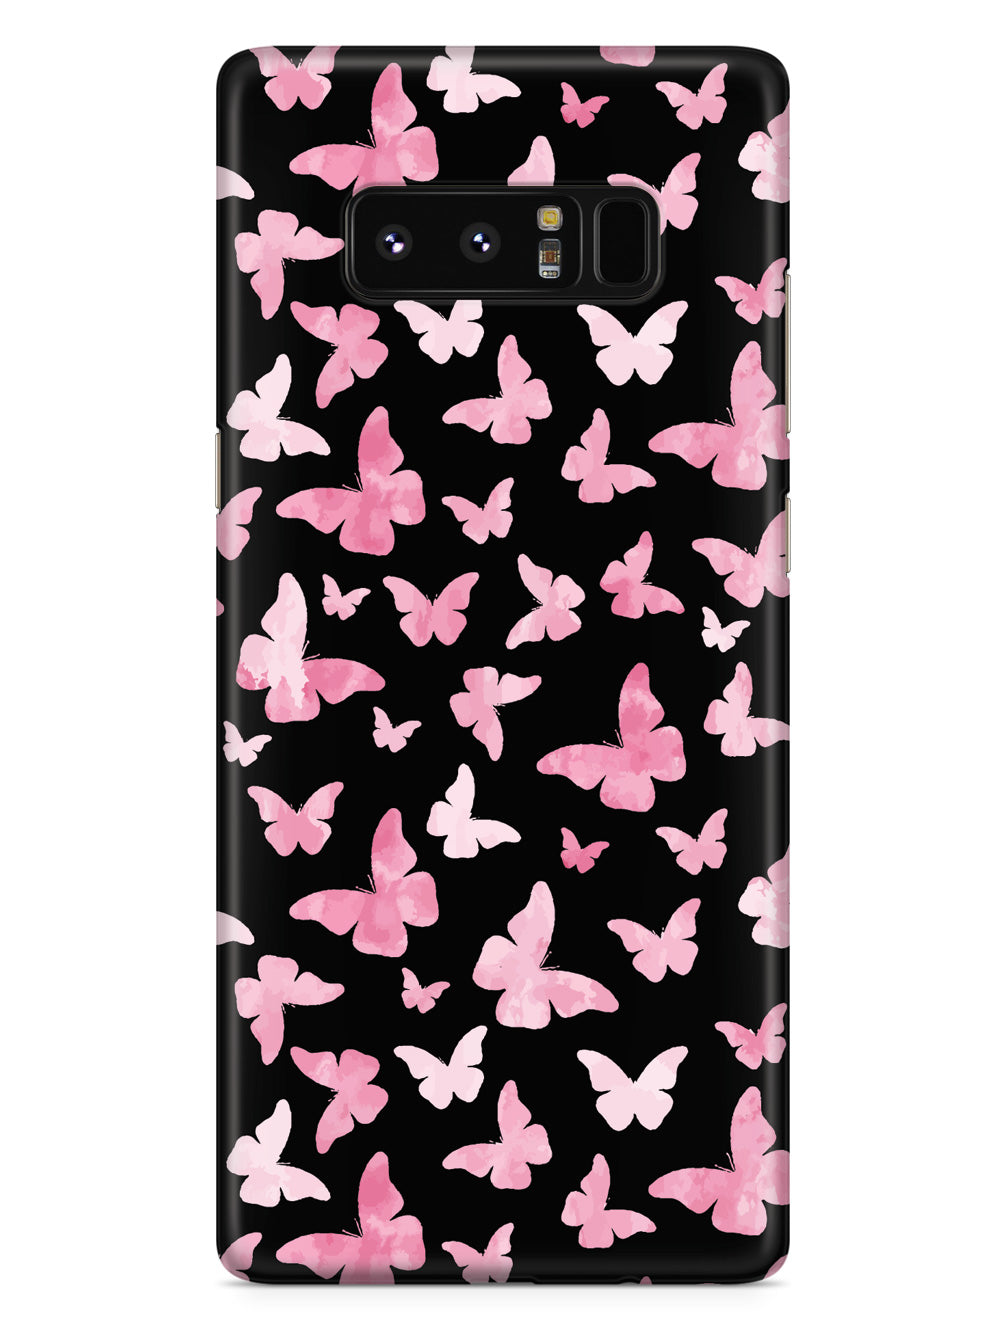 Pink Butterflies - Black Case